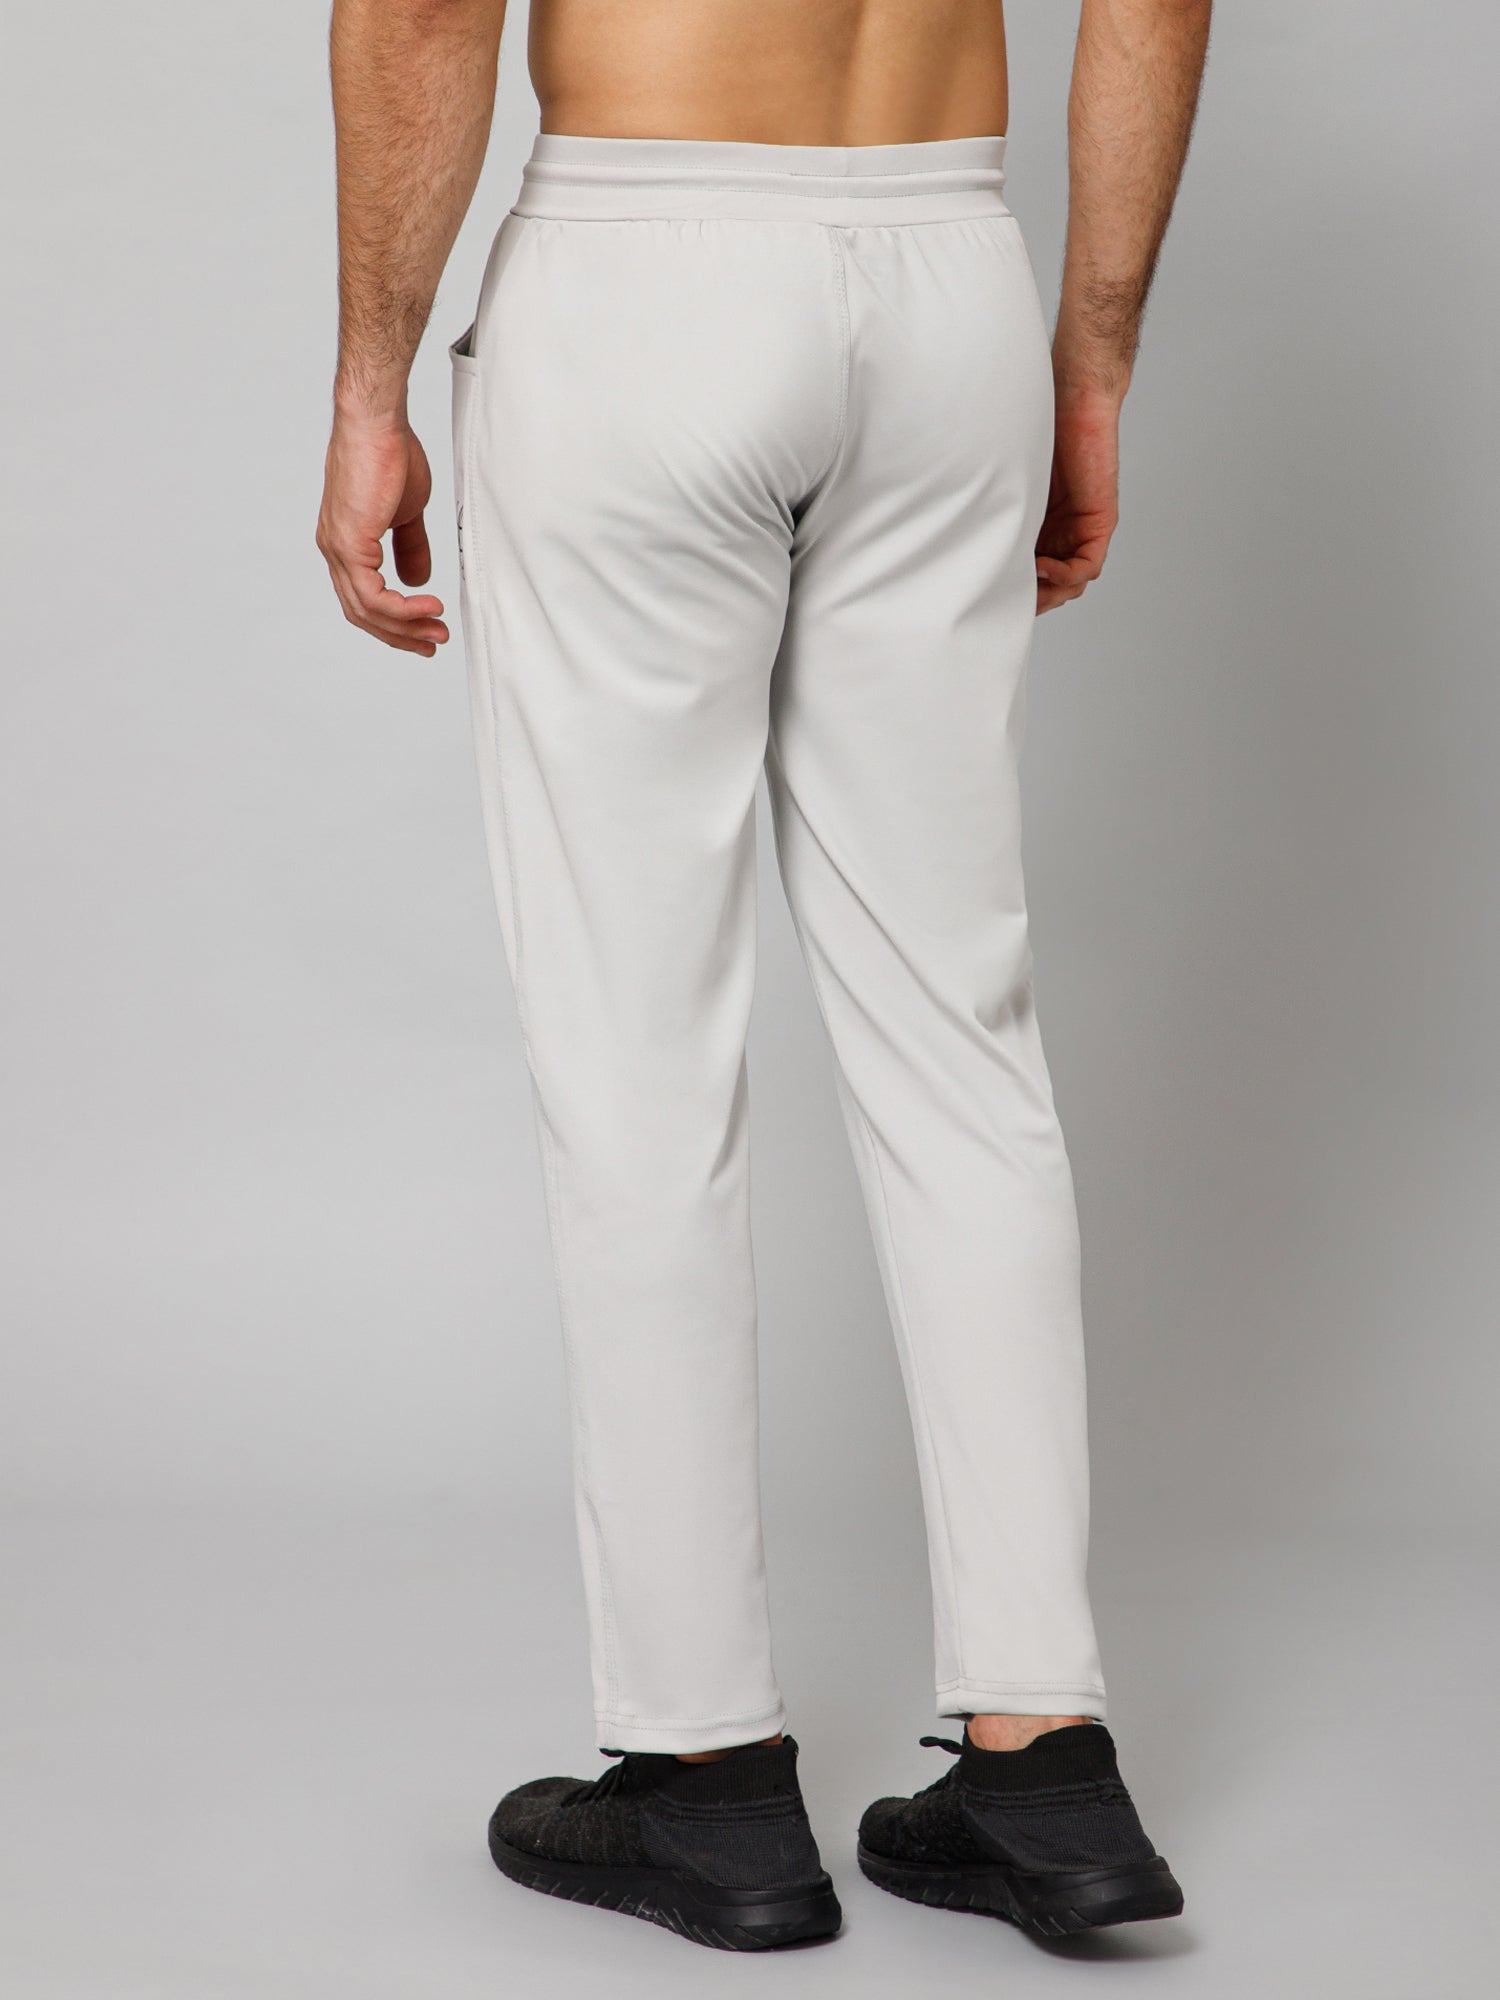 Plus Size Men's Stylish Contrast Color Sweatpants - Temu